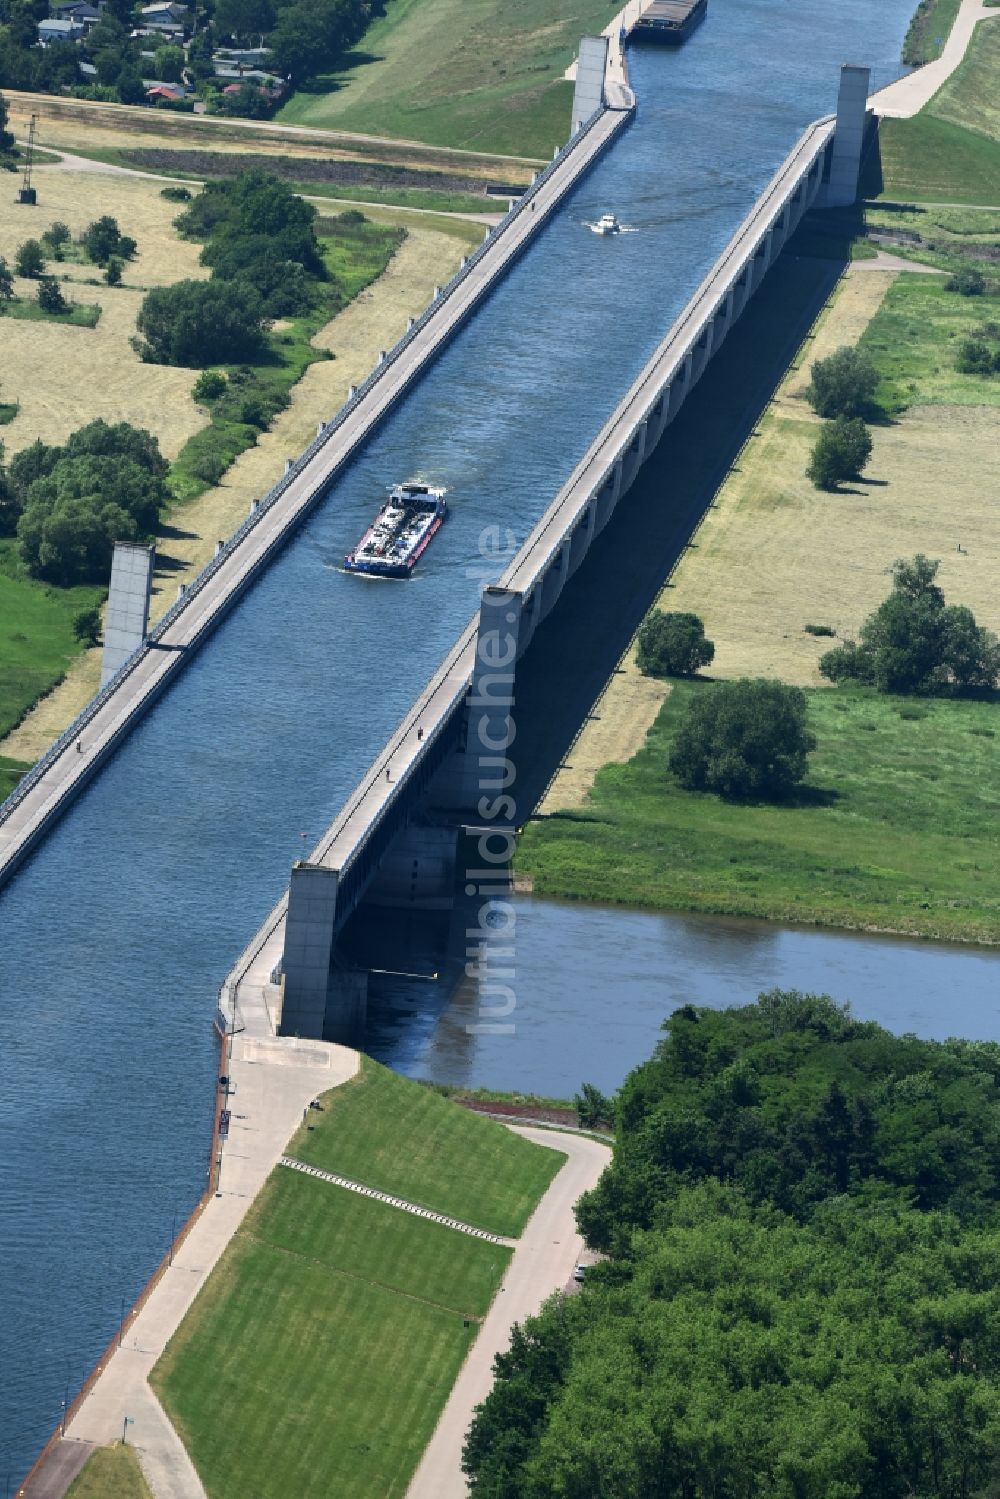 Hohenwarthe von oben - Güterverkehr- Schiff in Fahrt auf der Trogbrücke am Wasserstraßenkreuz MD bei Hohenwarthe in Sachsen-Anhalt